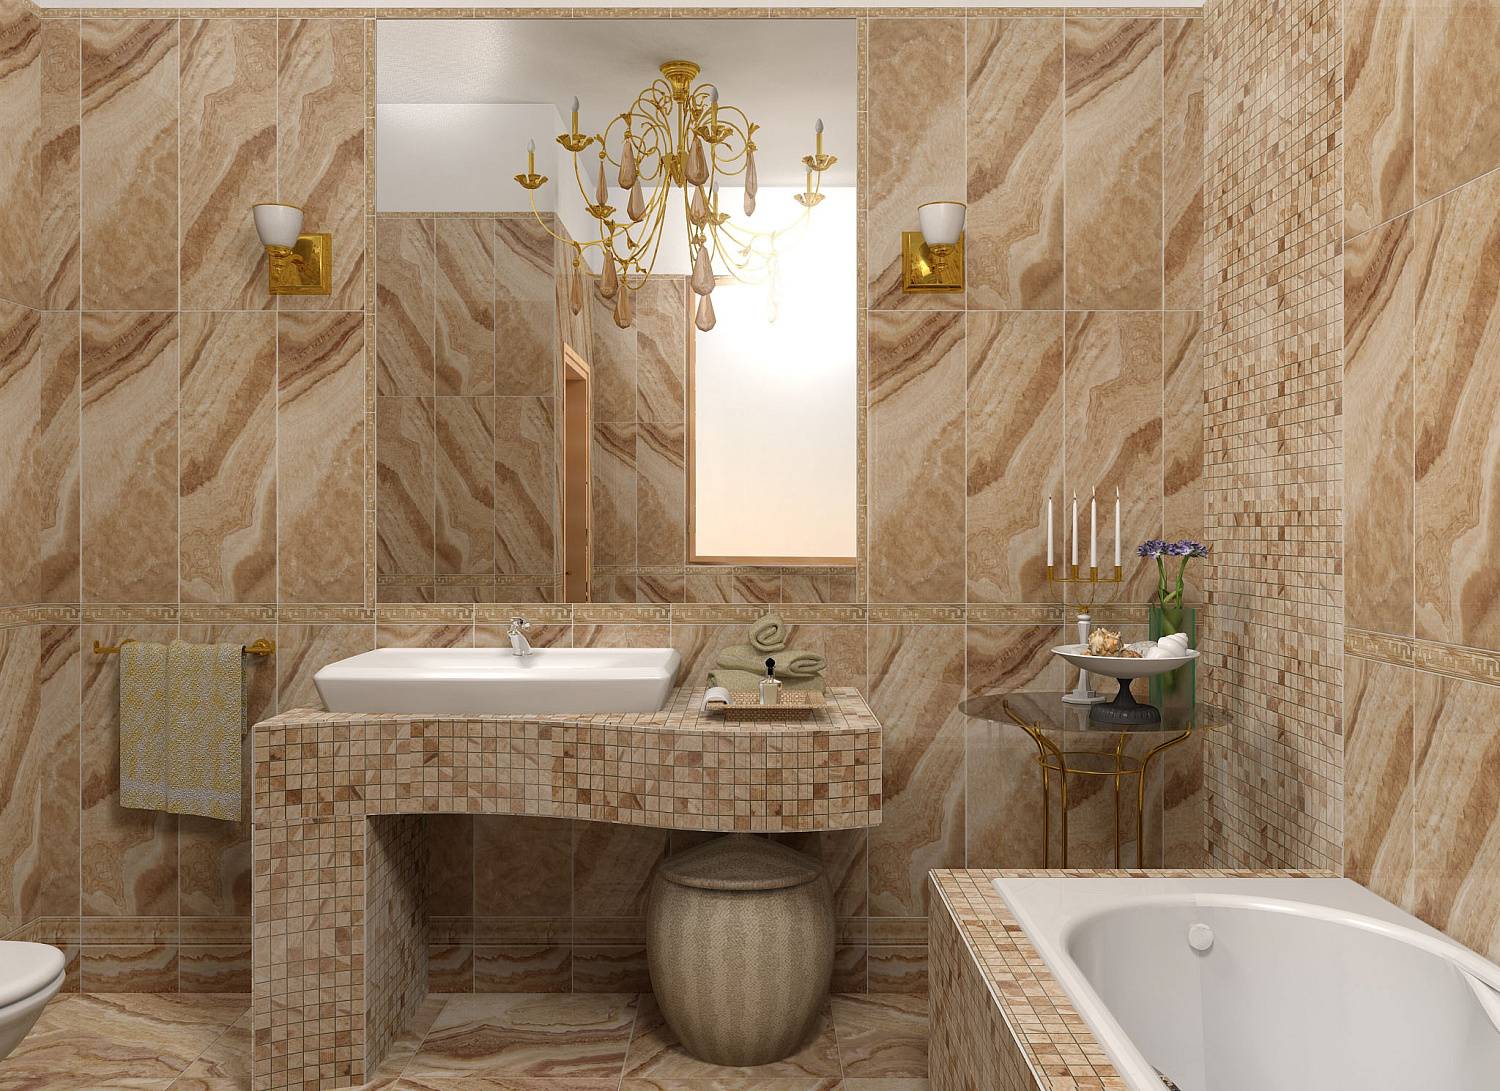 Ванная в мраморной плитке: 80 лучших фото-идей дизайна интерьера ванной